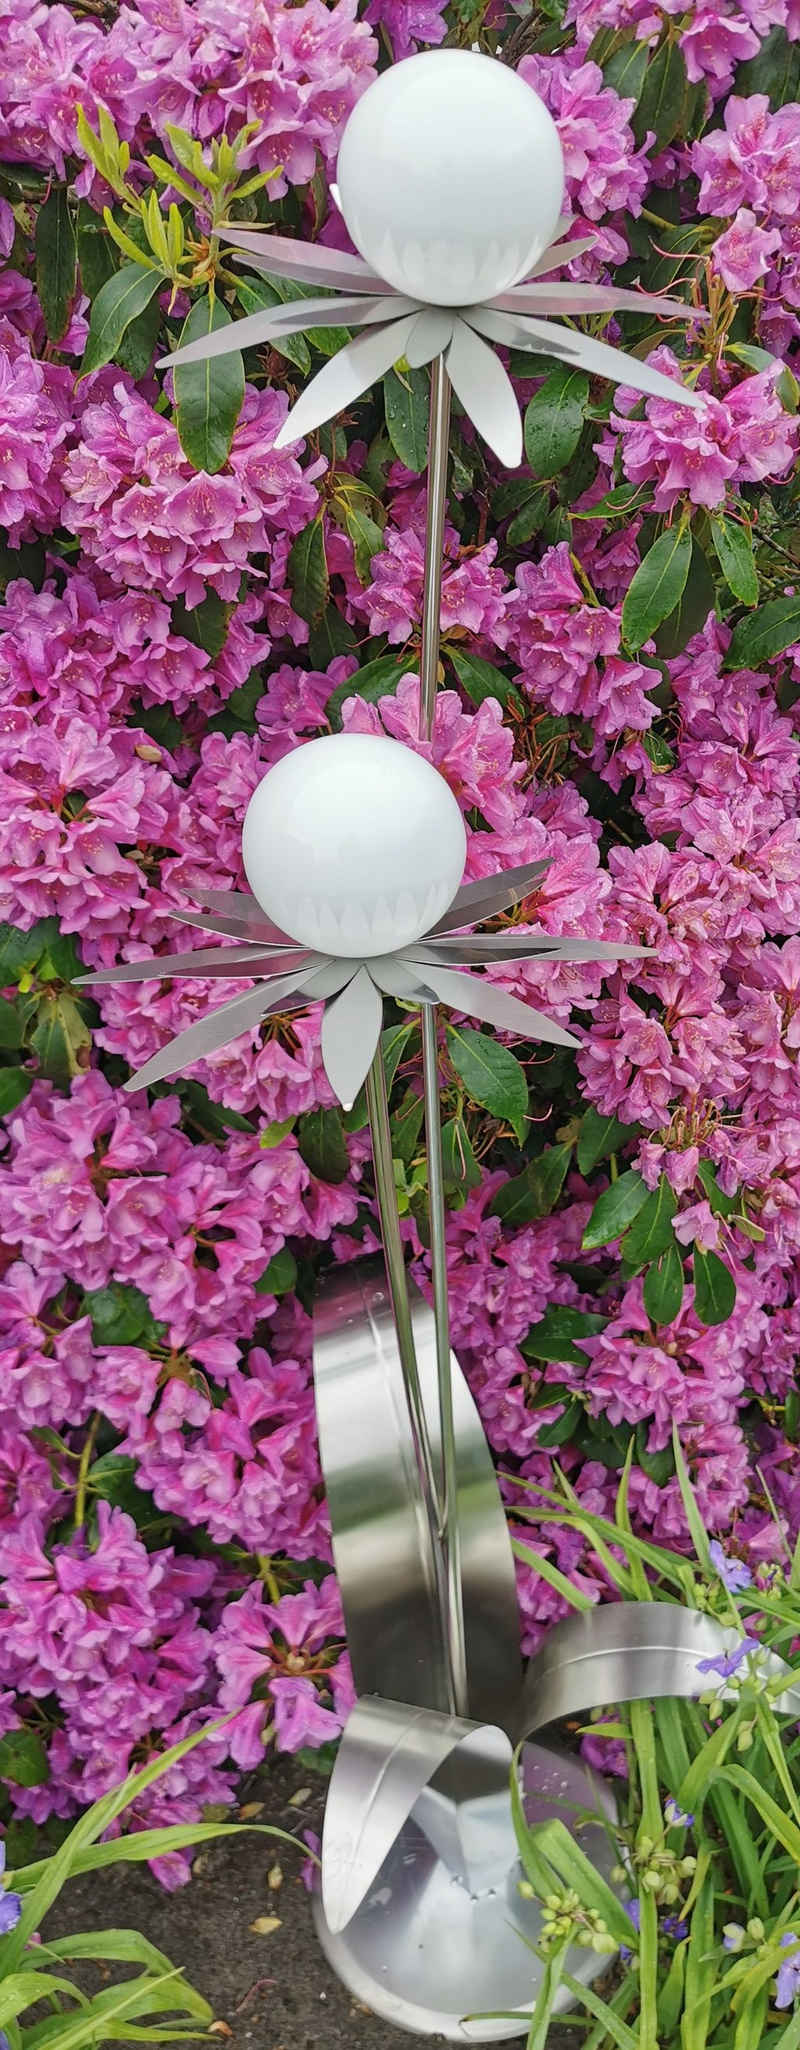 Jürgen Bocker - Gartenambiente Gartenstecker Blume Milano 120 cm Kugel weiß poliert Standfuß Gartendeko